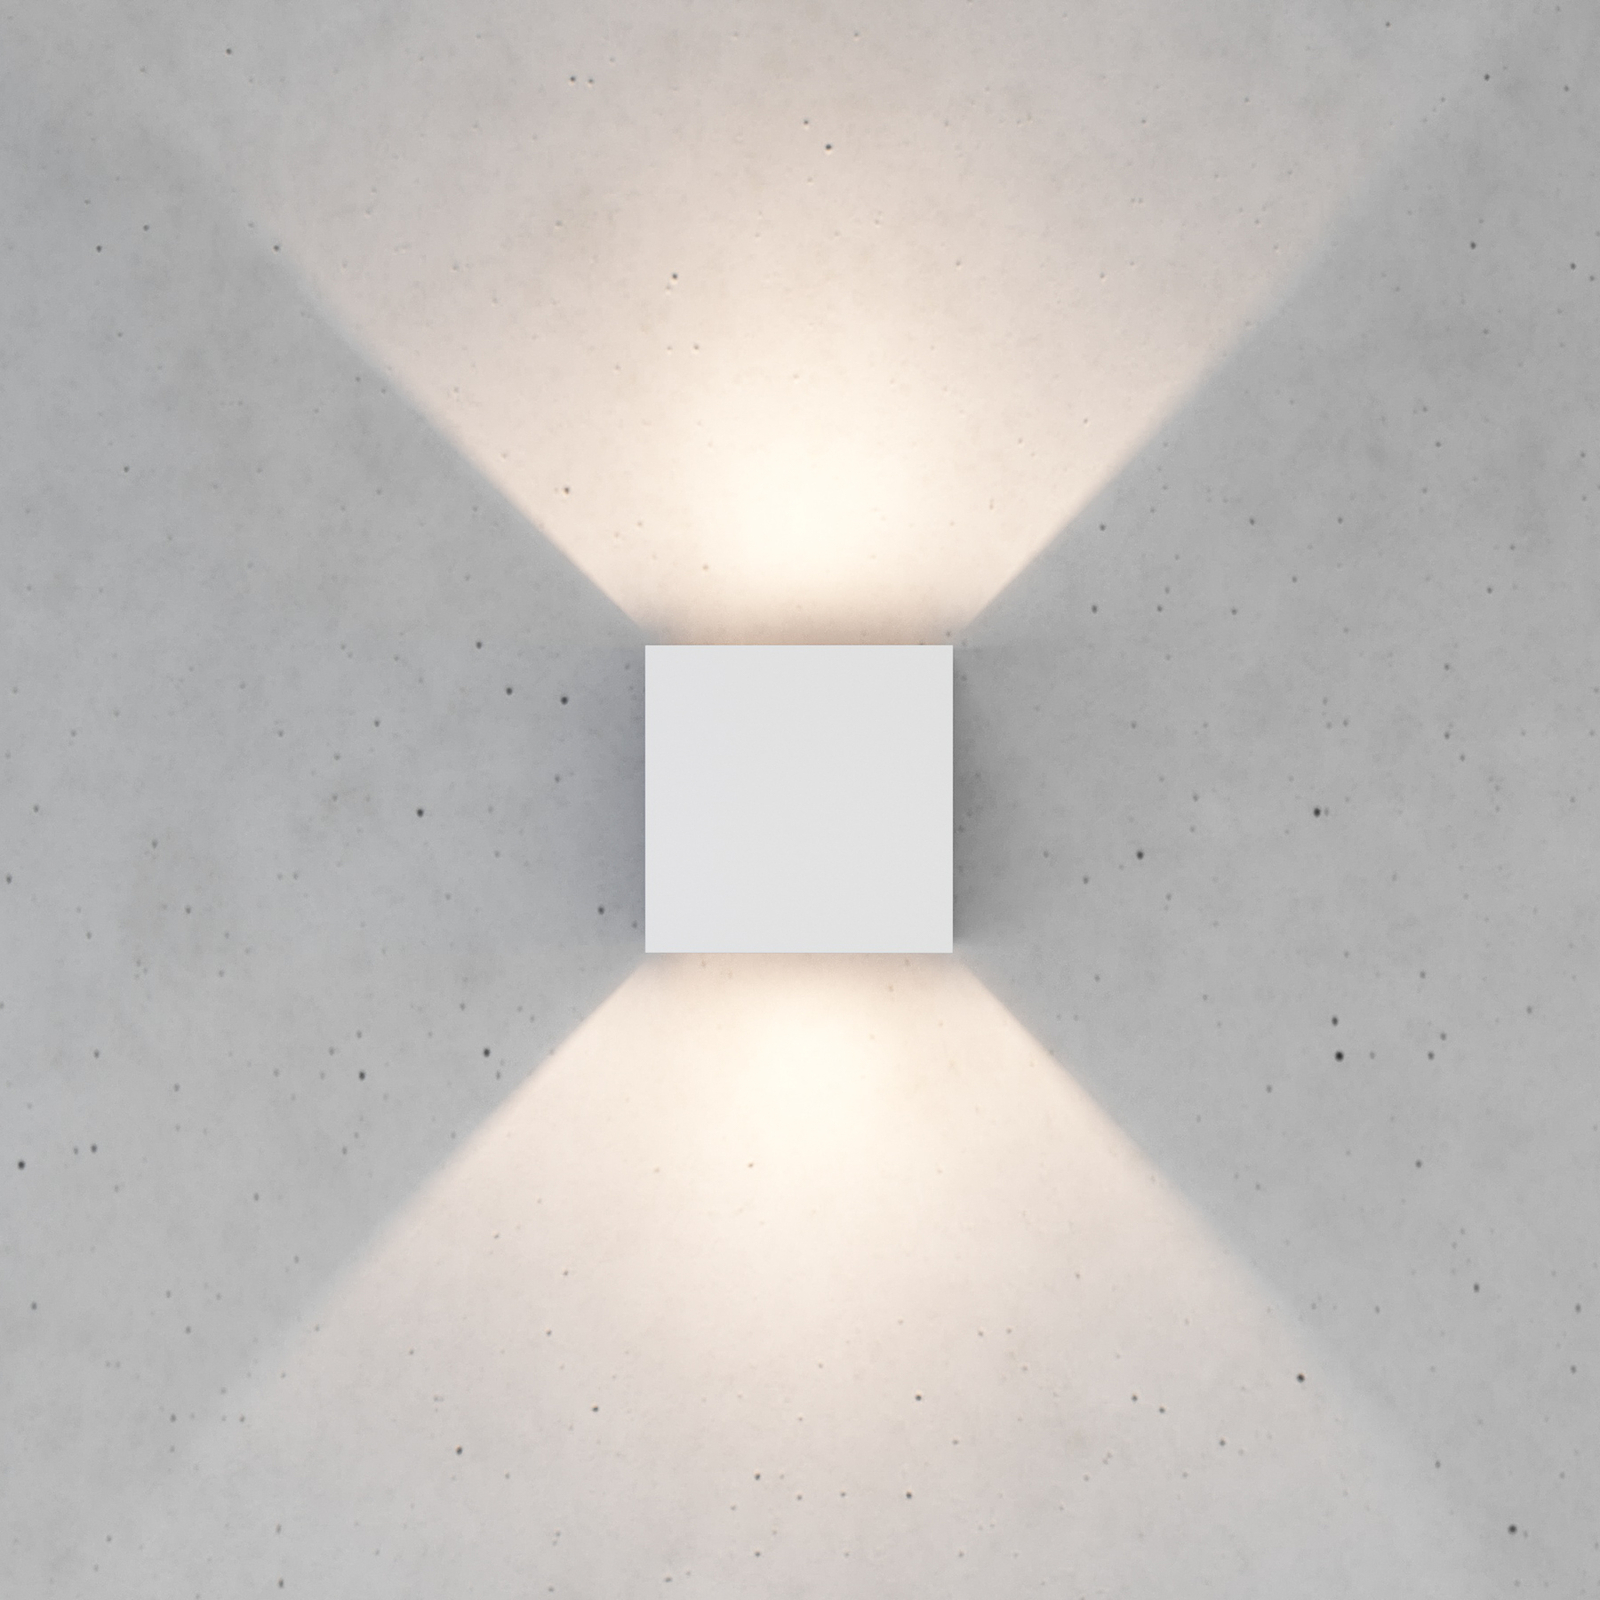 Zuza 2 stenska svetilka, bela, kovinska, štiri krila, 10 cm, G9